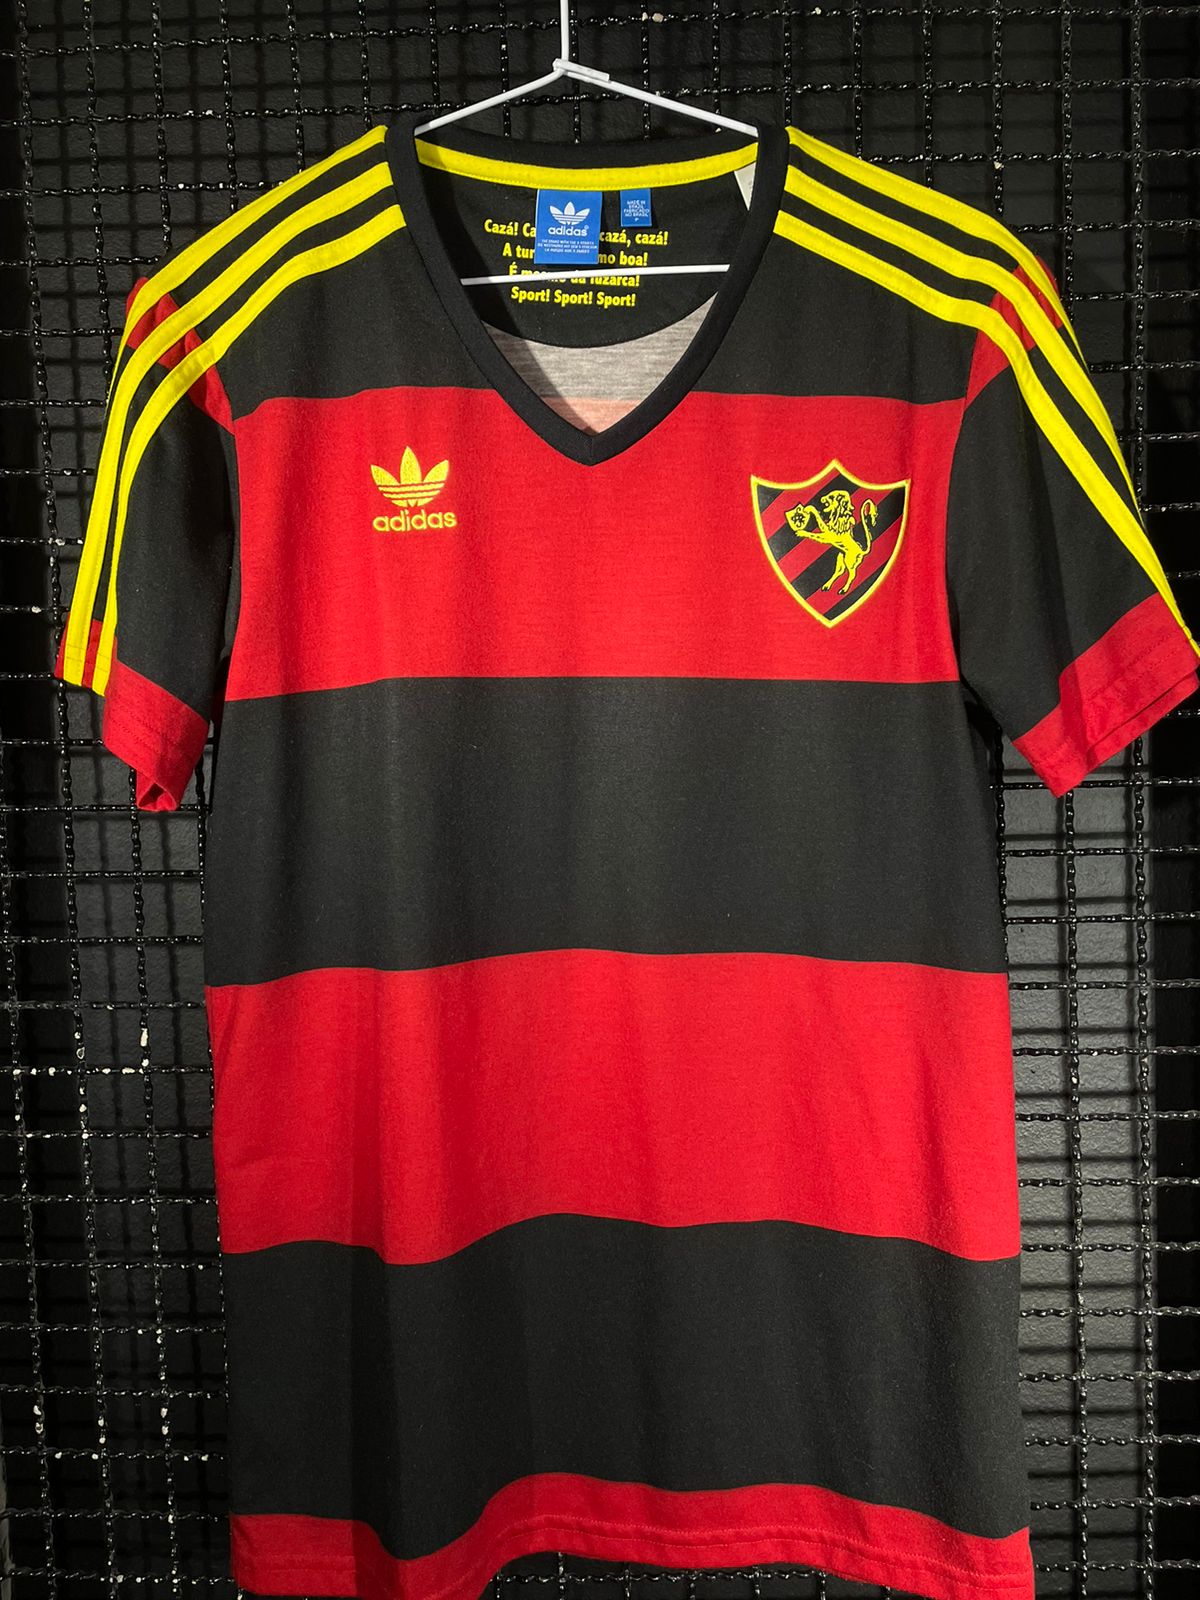 Camisa Sport Recife Adidas Originals 110 anos comemorativa – Memorias do  Esporte